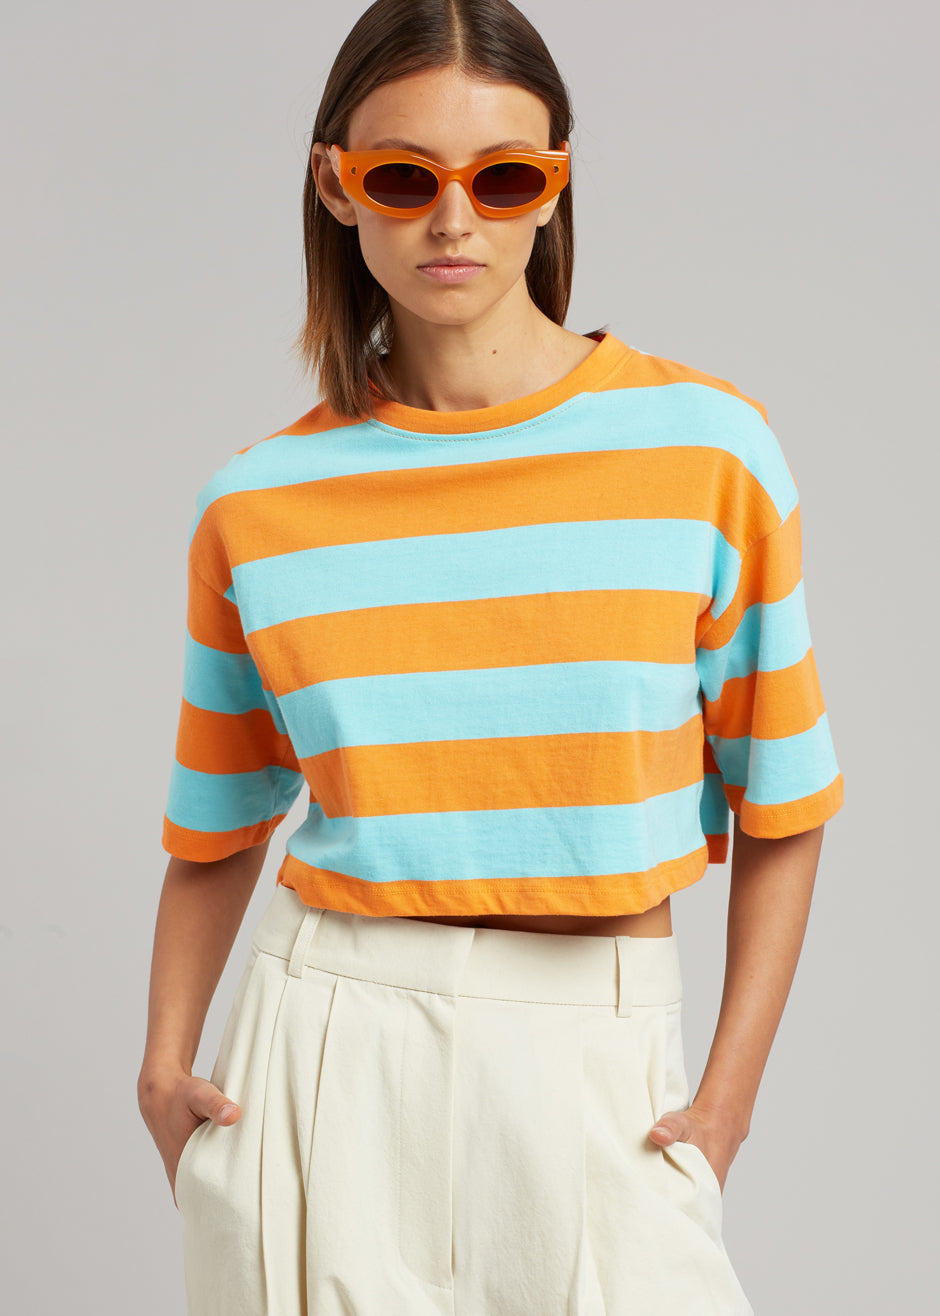 Karina Cropped T-Shirt - Turquoise/Bright Orange - 1